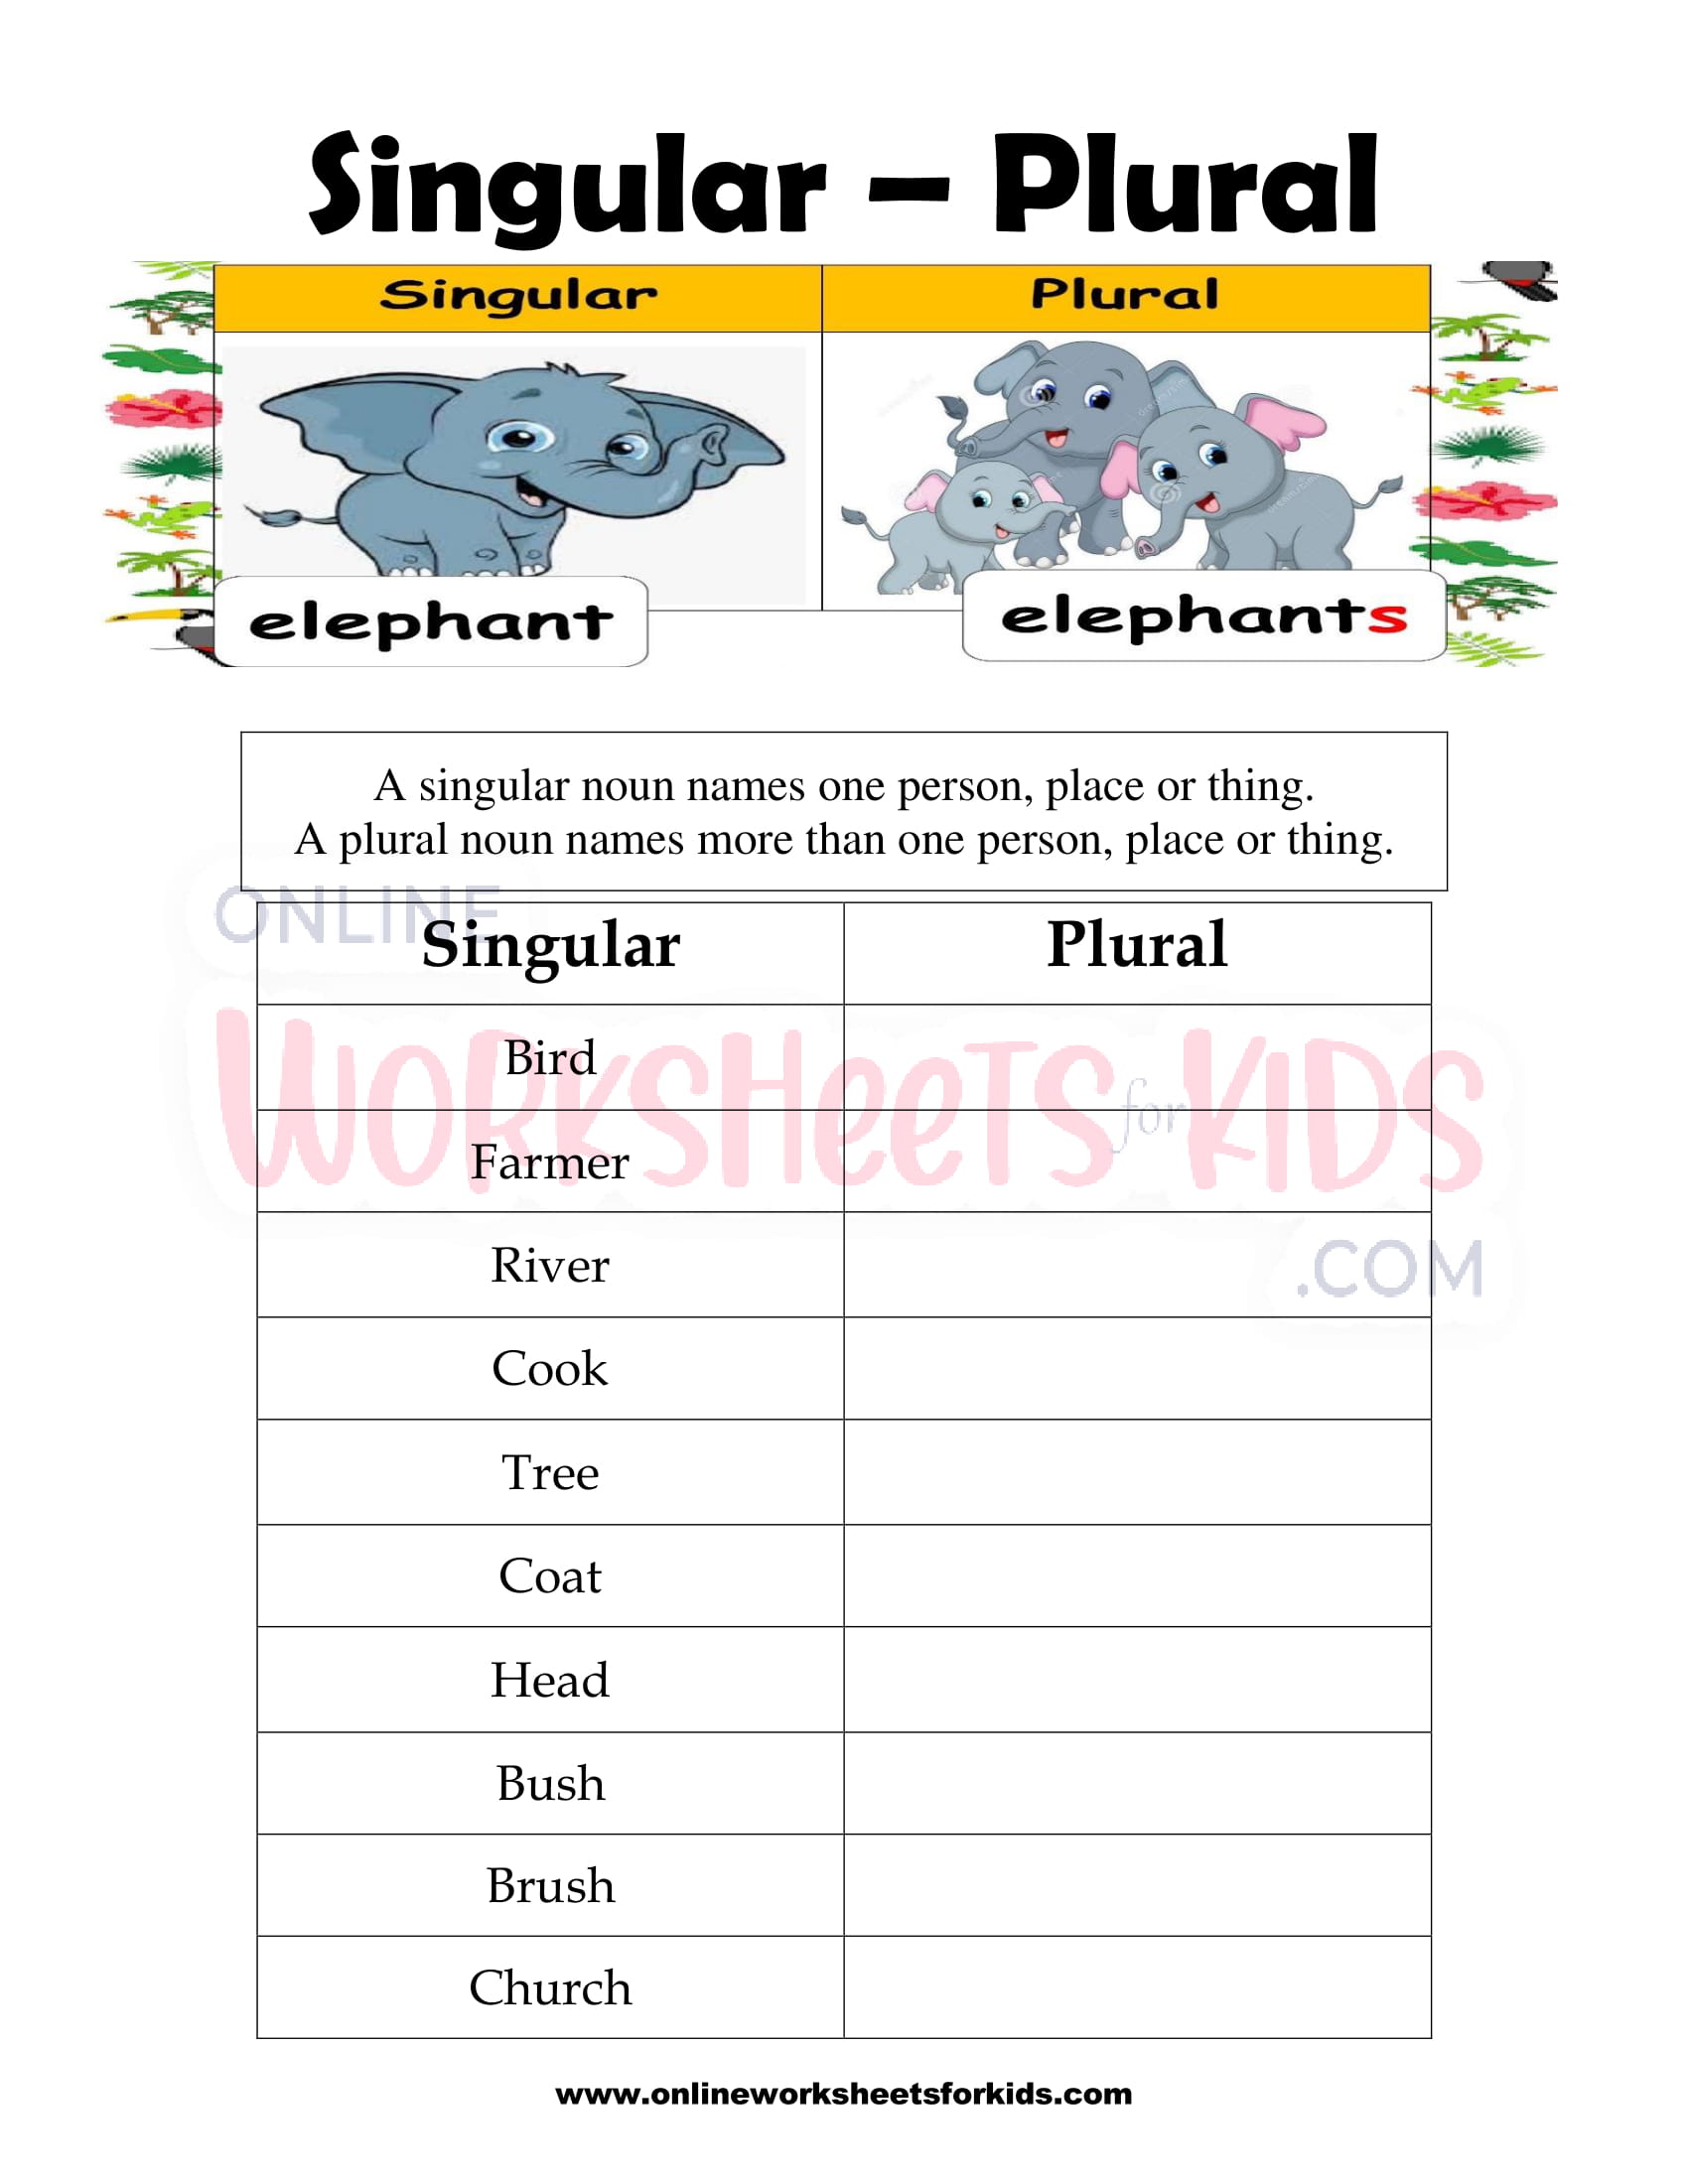 singular-and-plural-nouns-worksheet-2